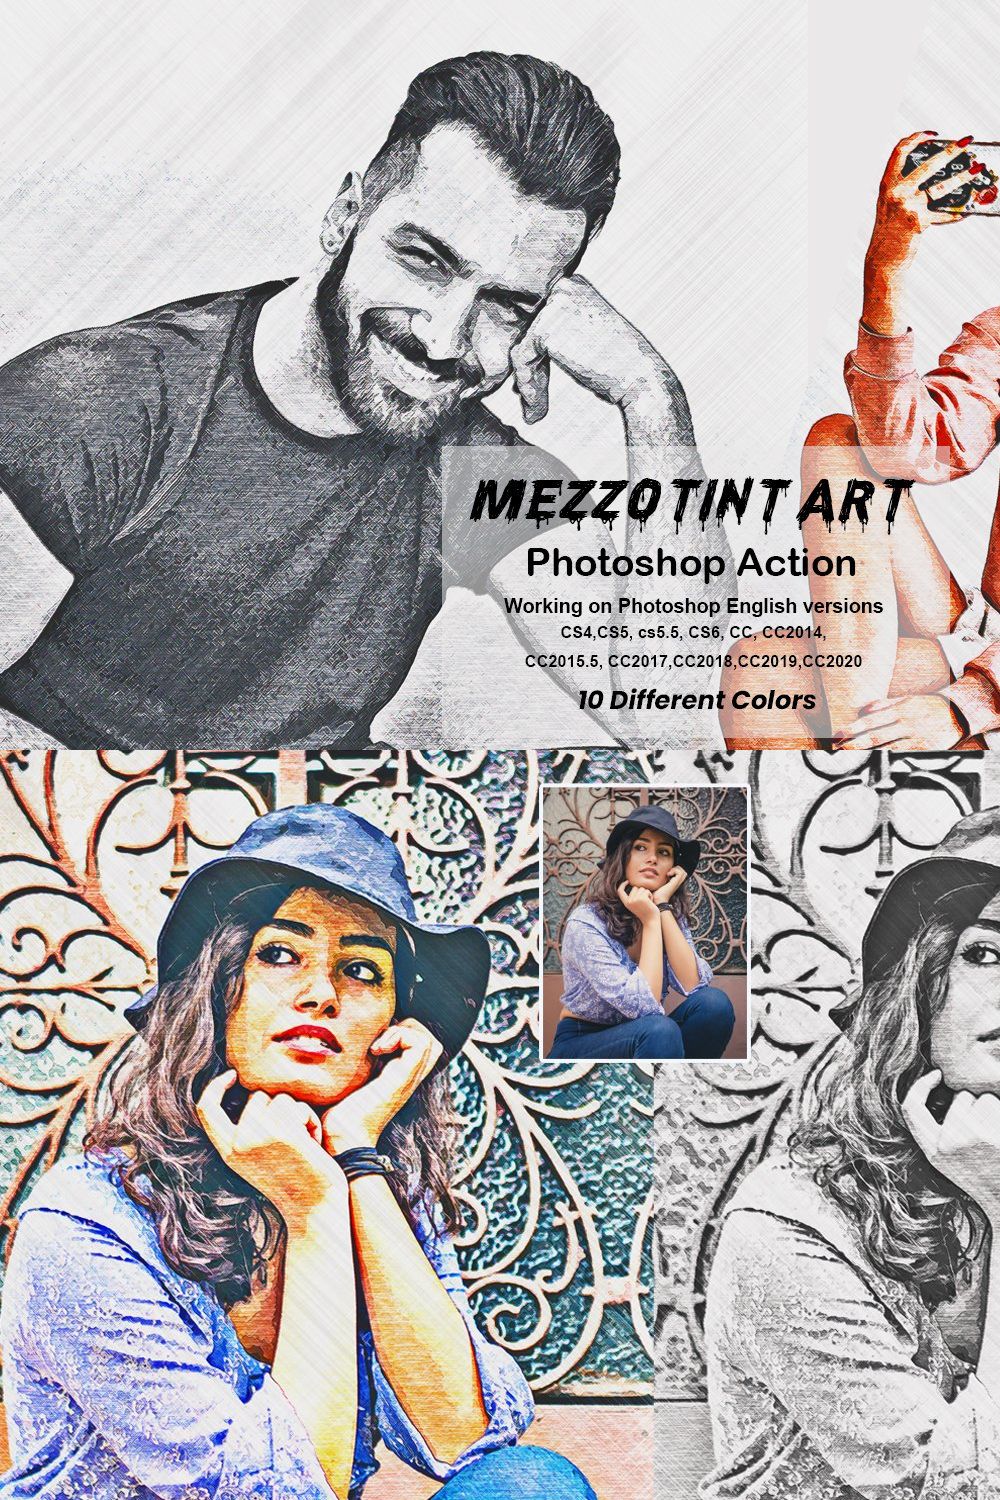 Mezzotint Art Photoshop Action pinterest preview image.